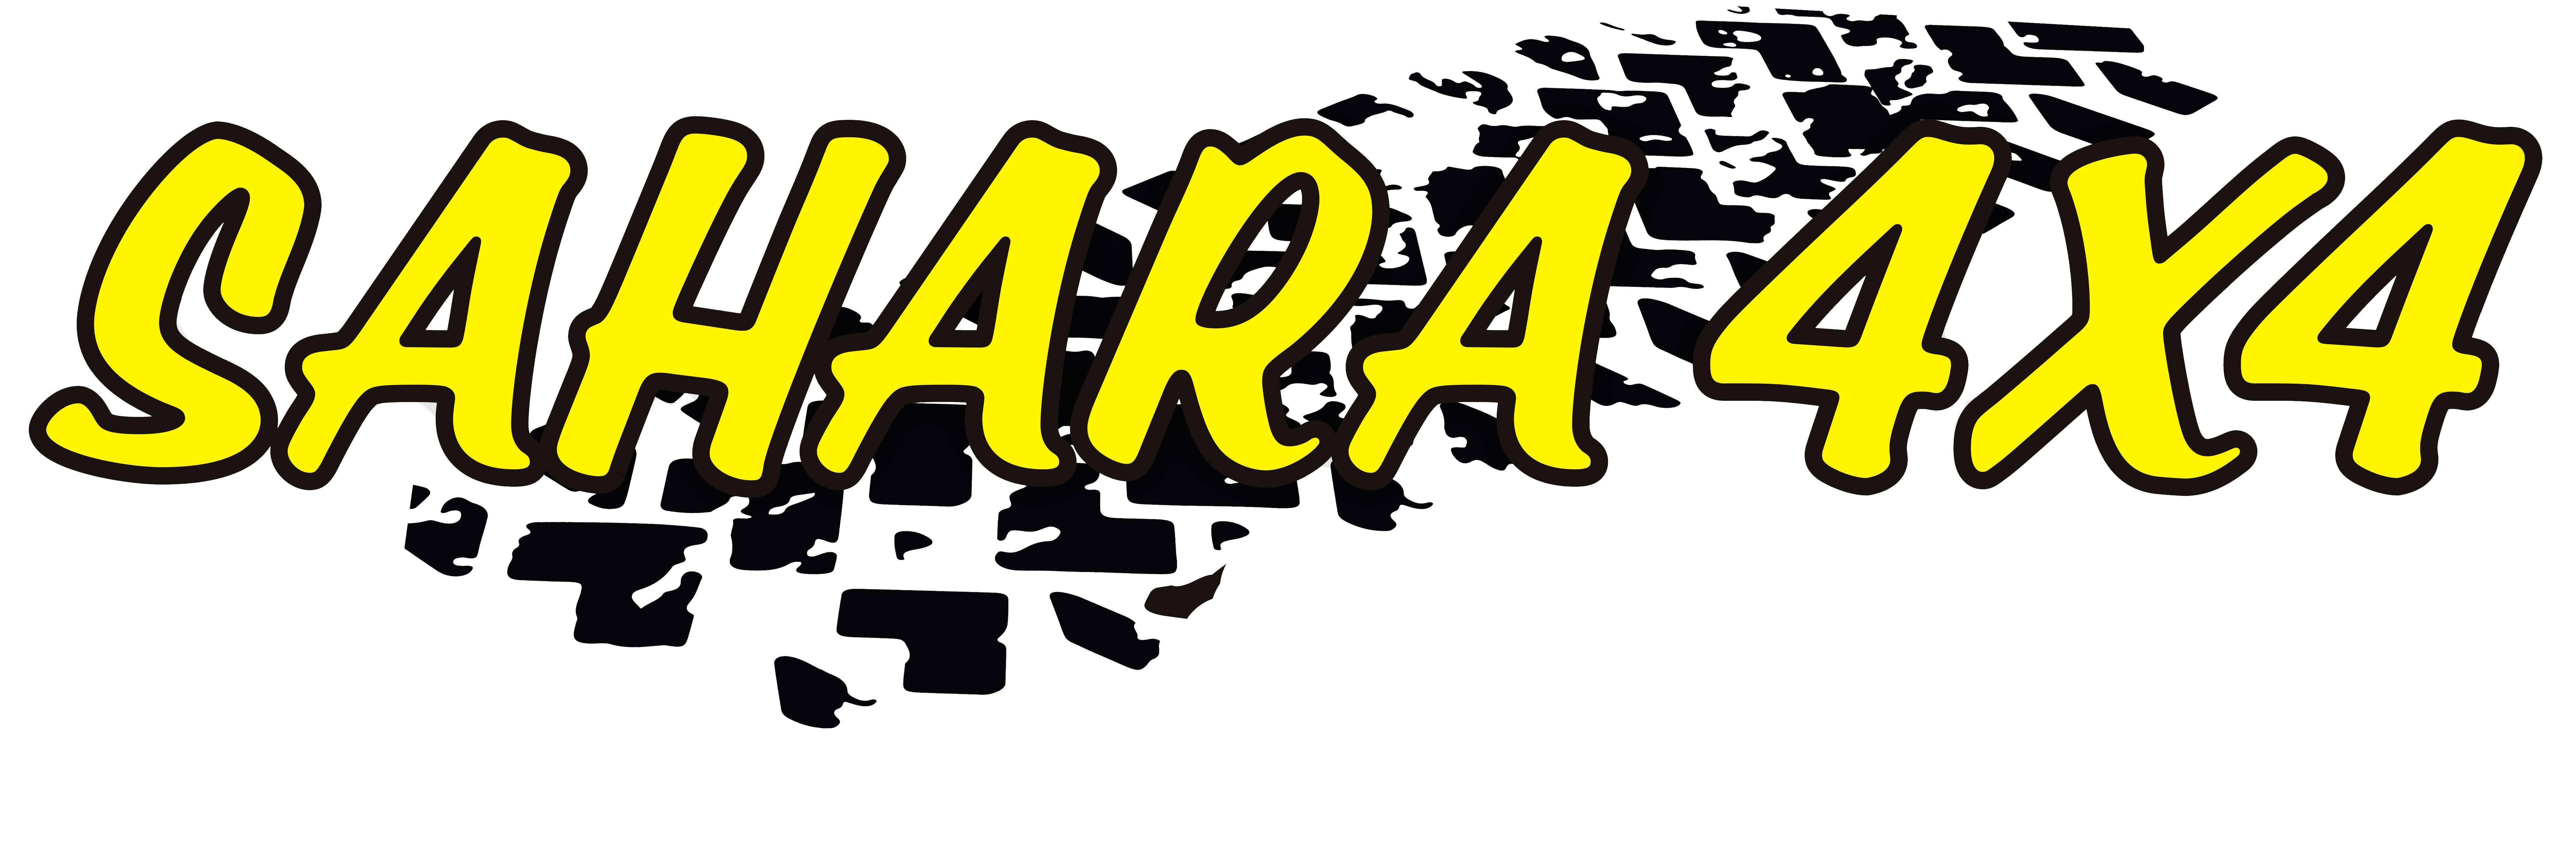 Sponsor Sahara 4x4